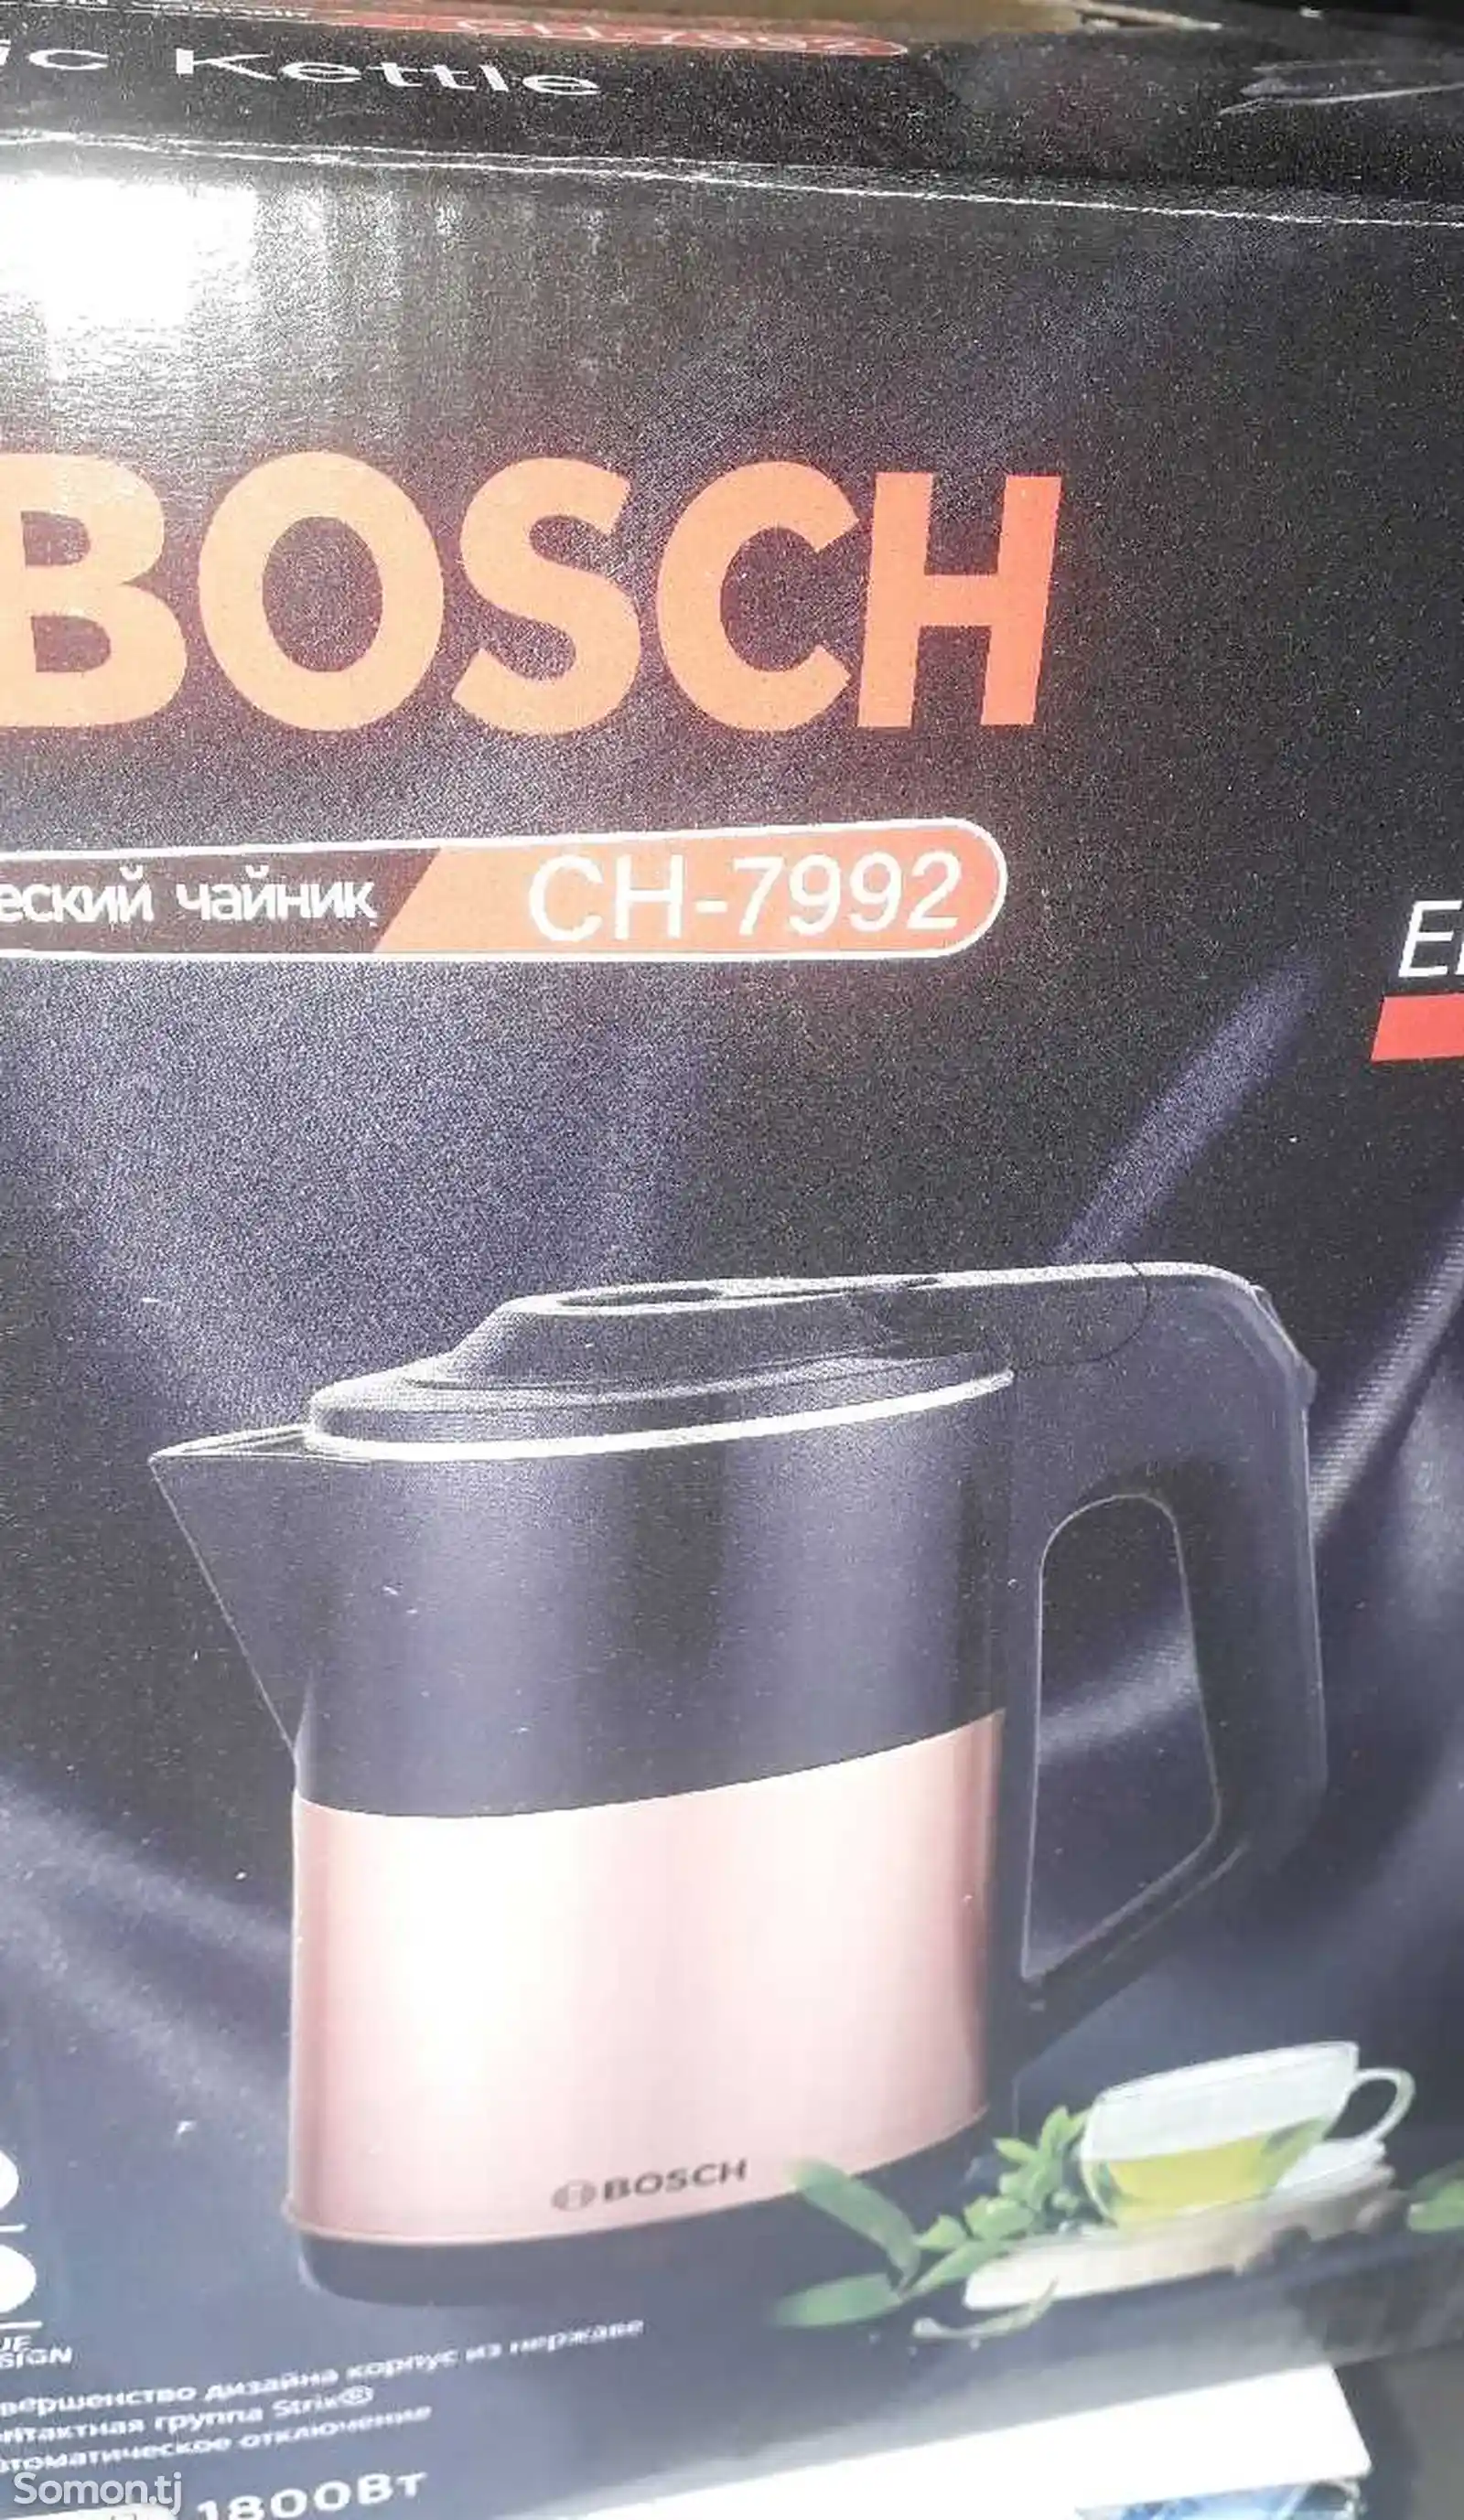 Электрочайник Bosch CH-7992